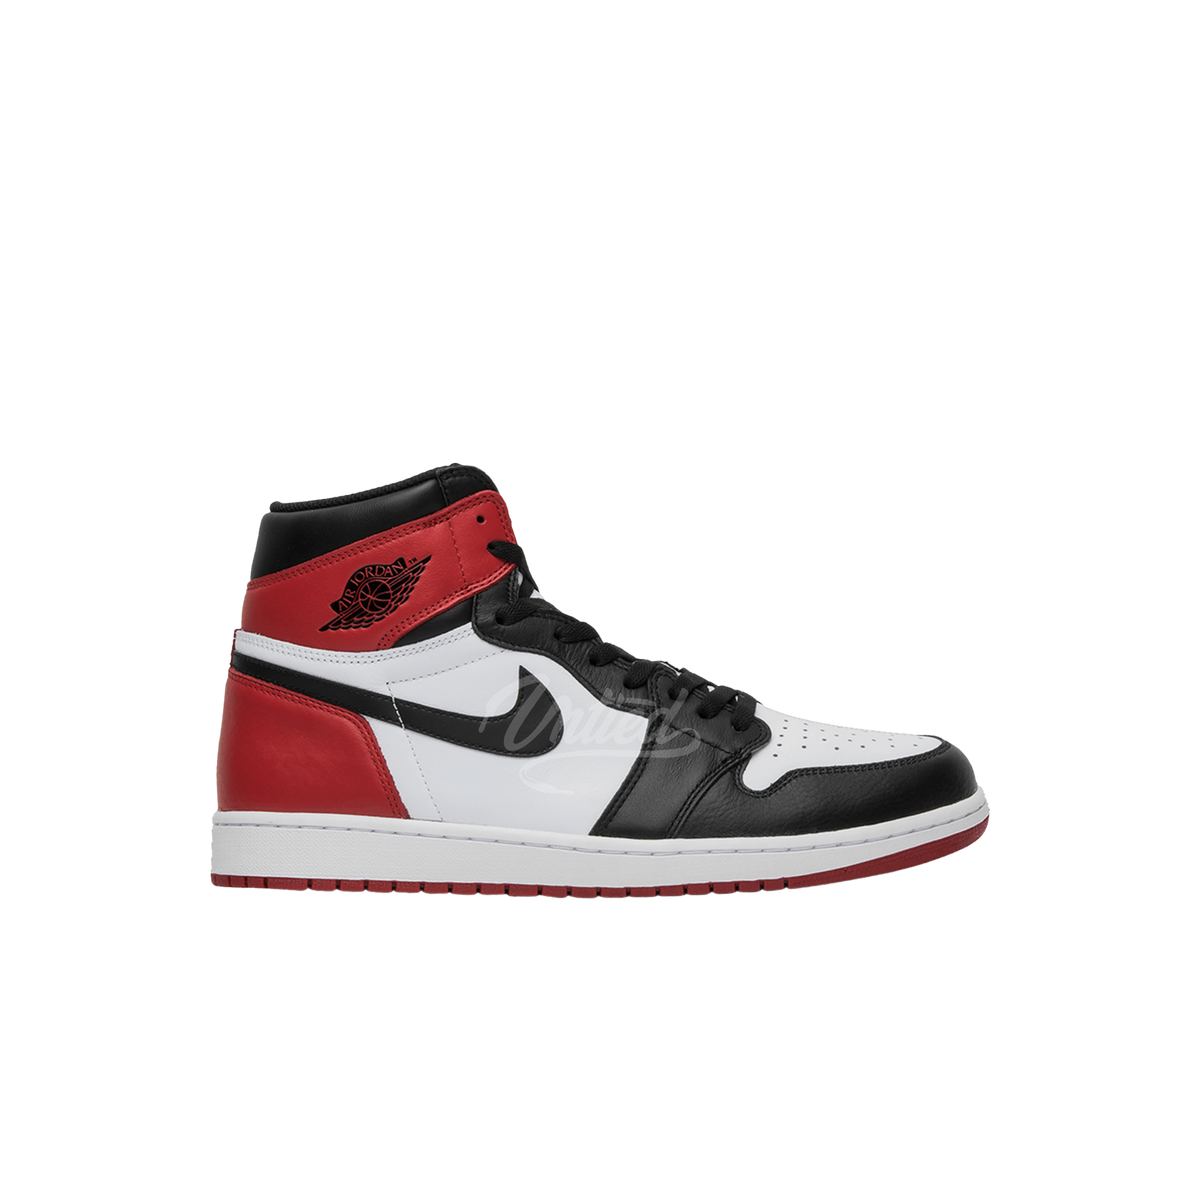 Air Jordan 1 "Black Toe"